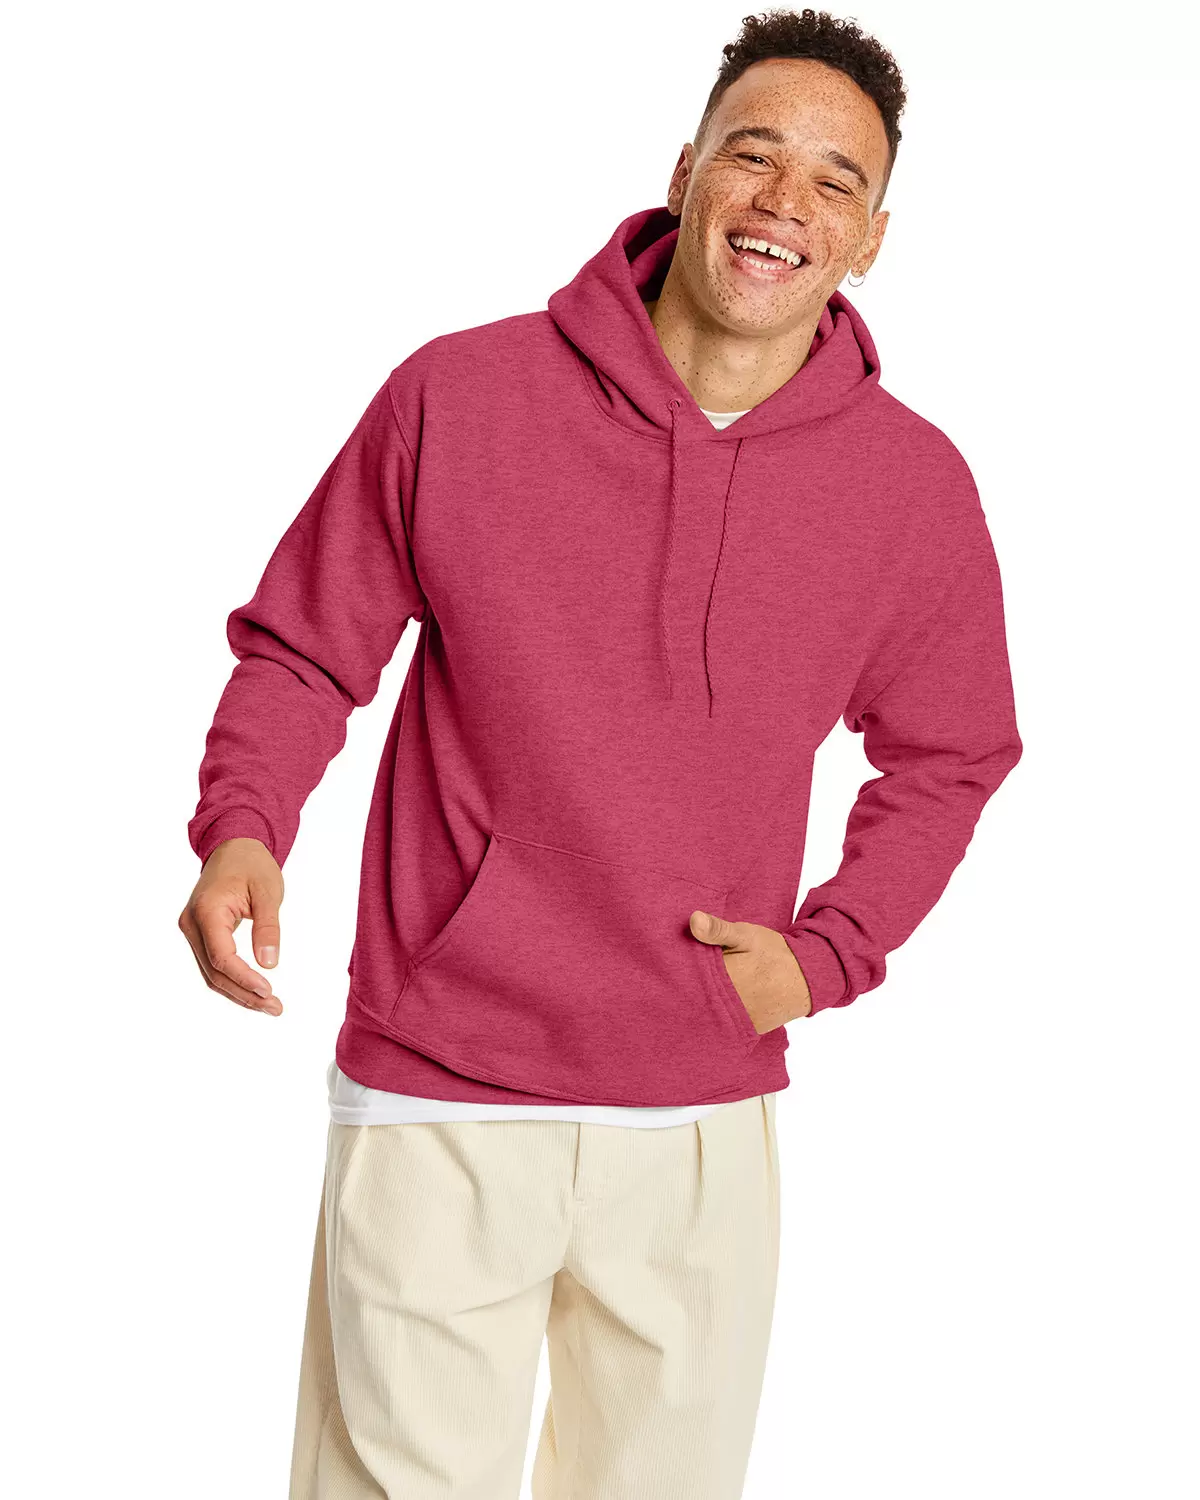 P170 Hanes® PrintPro®XP™ Comfortblend® Hooded Sweatshirt - From $10.61